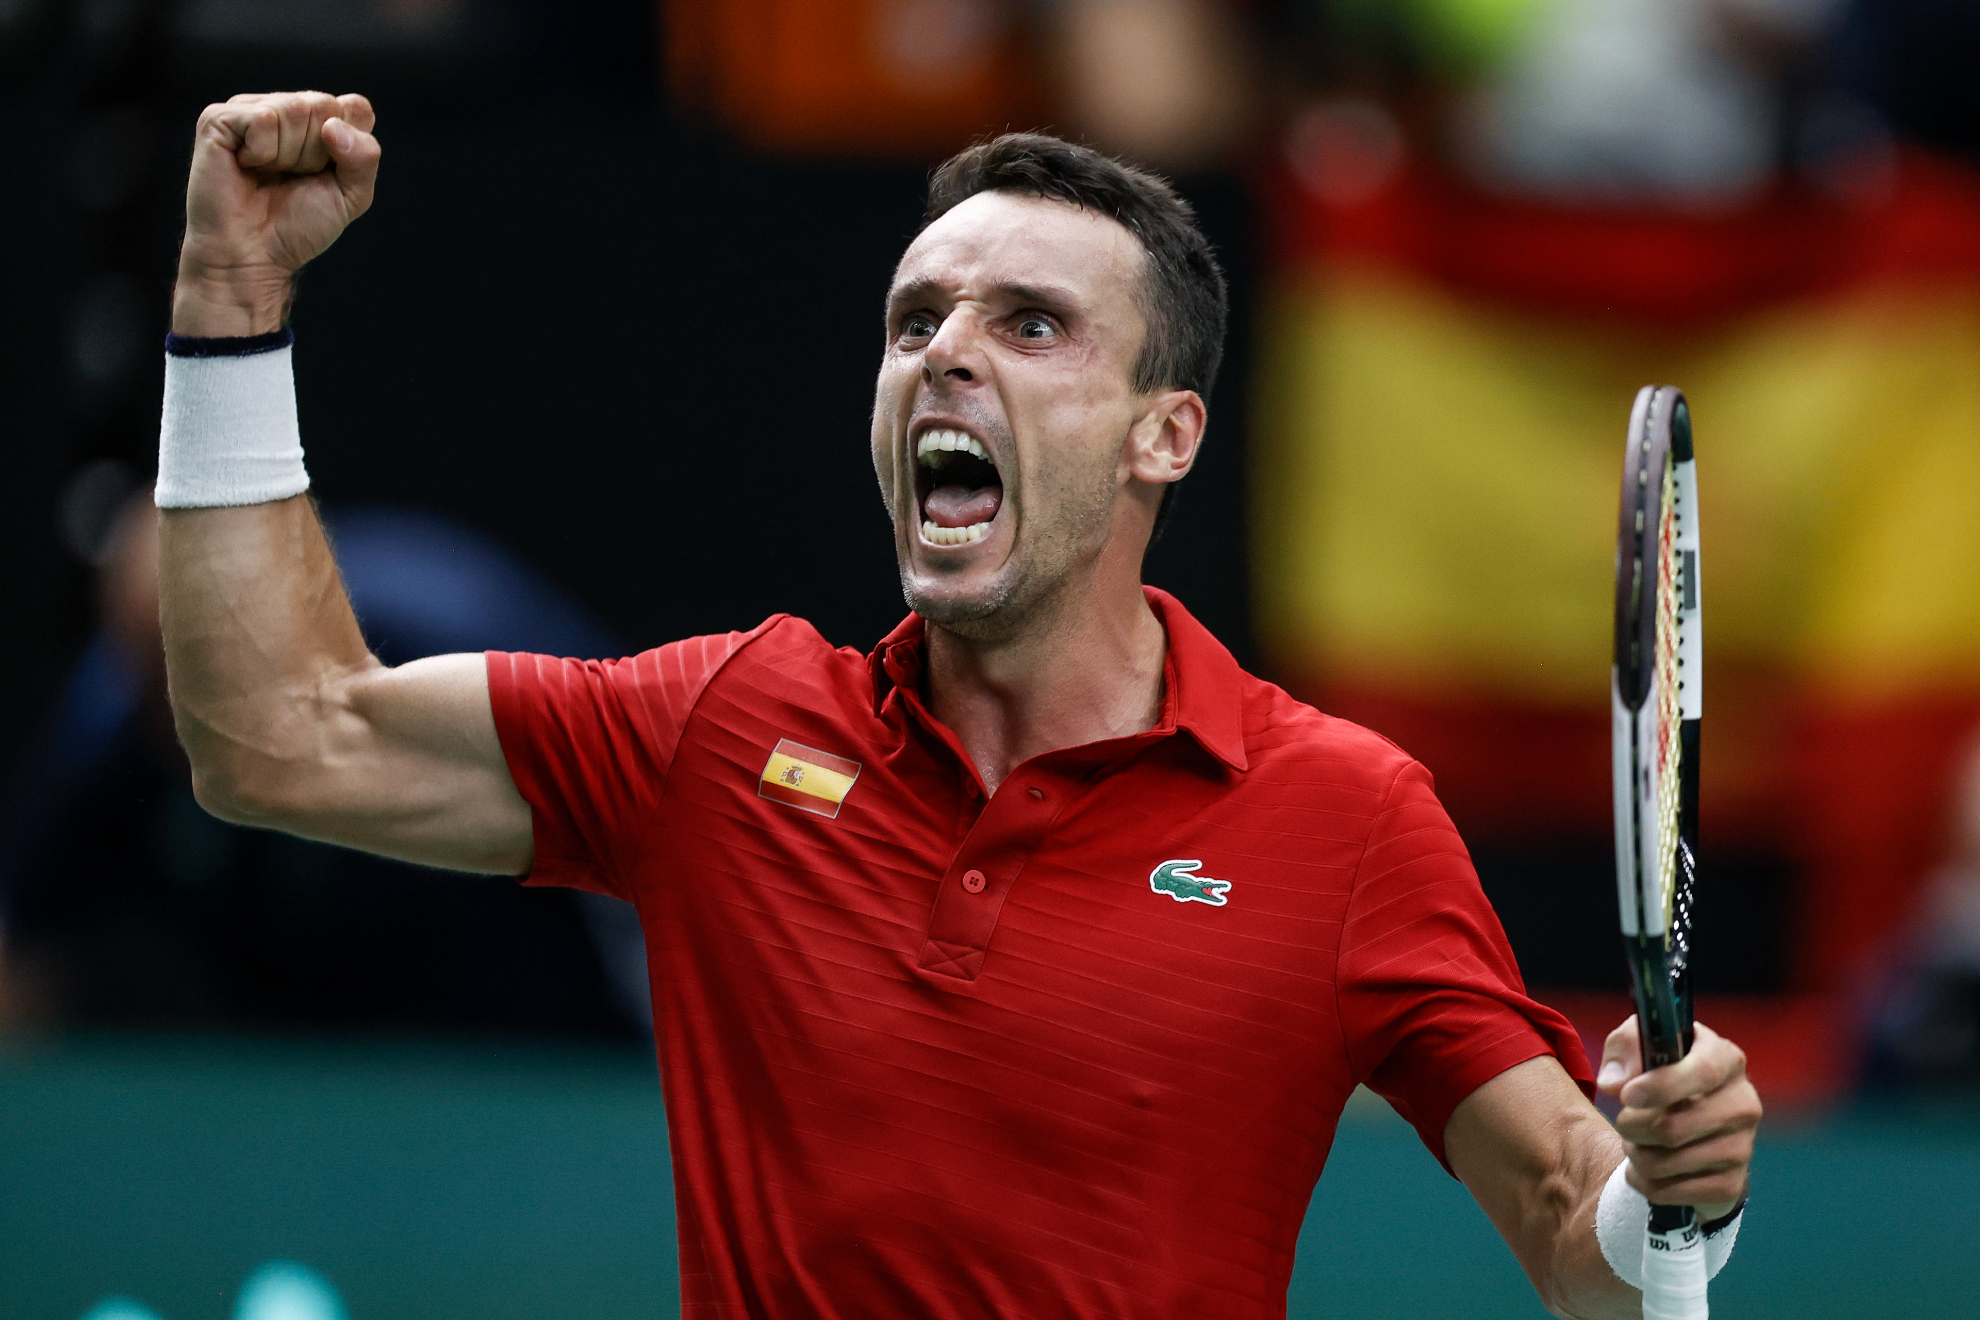 España - Canadá en Copa Davis | Bautista - Pospisil, resultado del partido